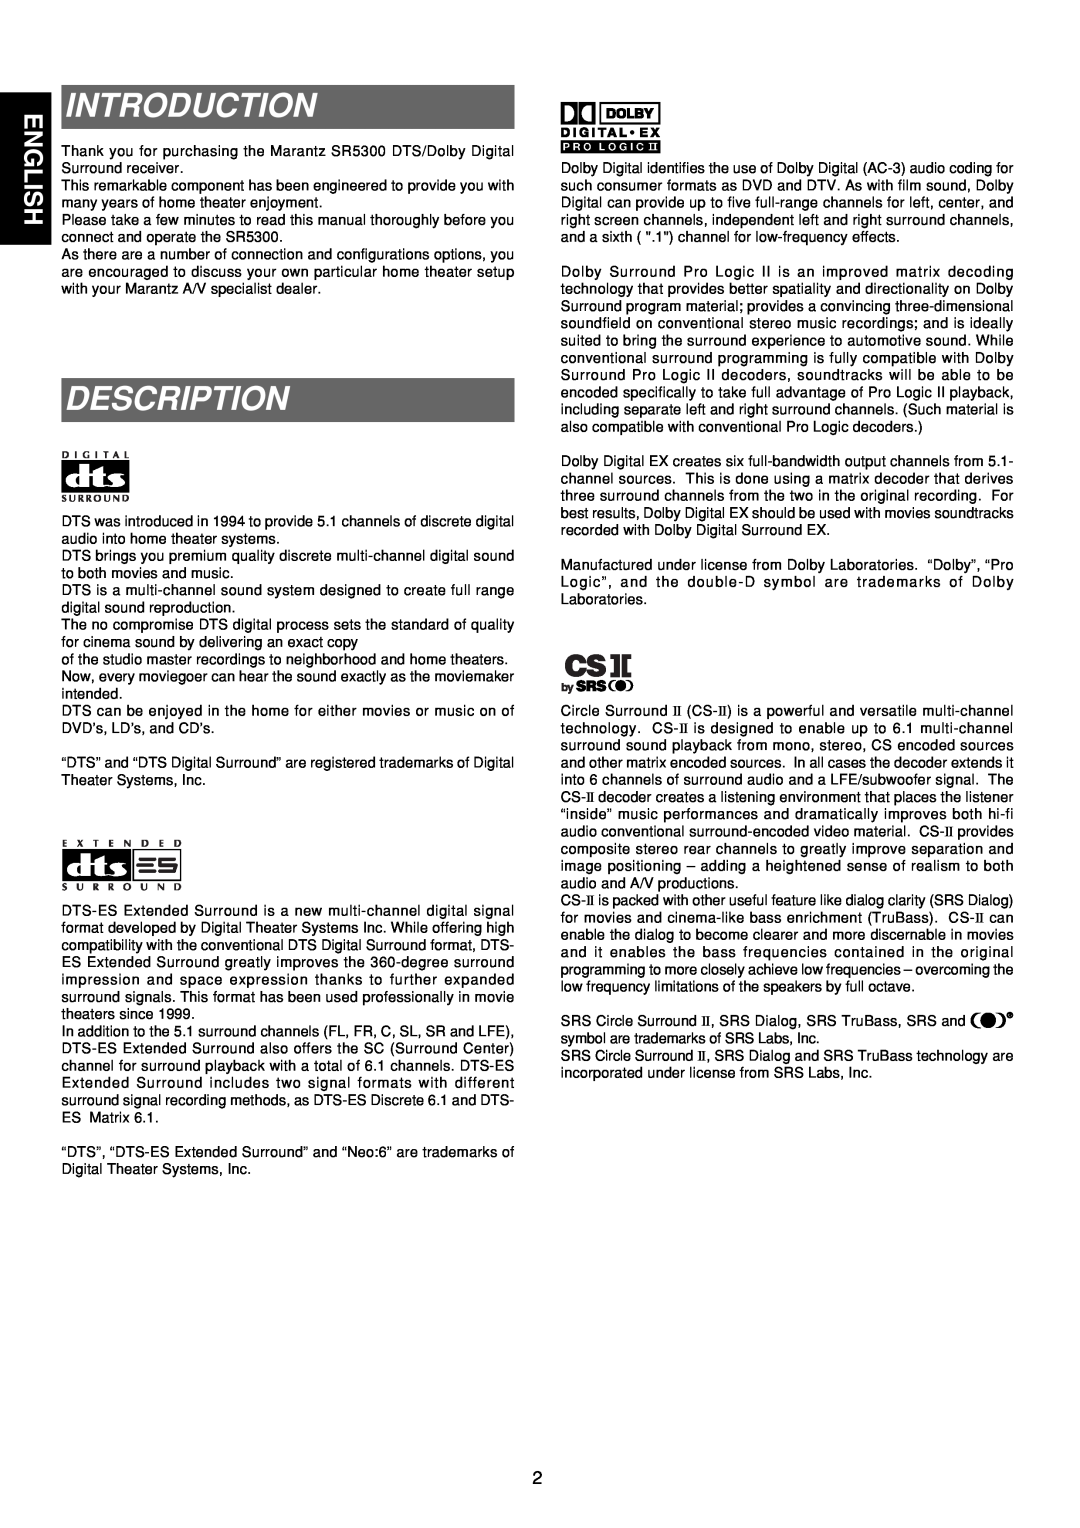 Marantz SR5300 manual Introduction, Description 